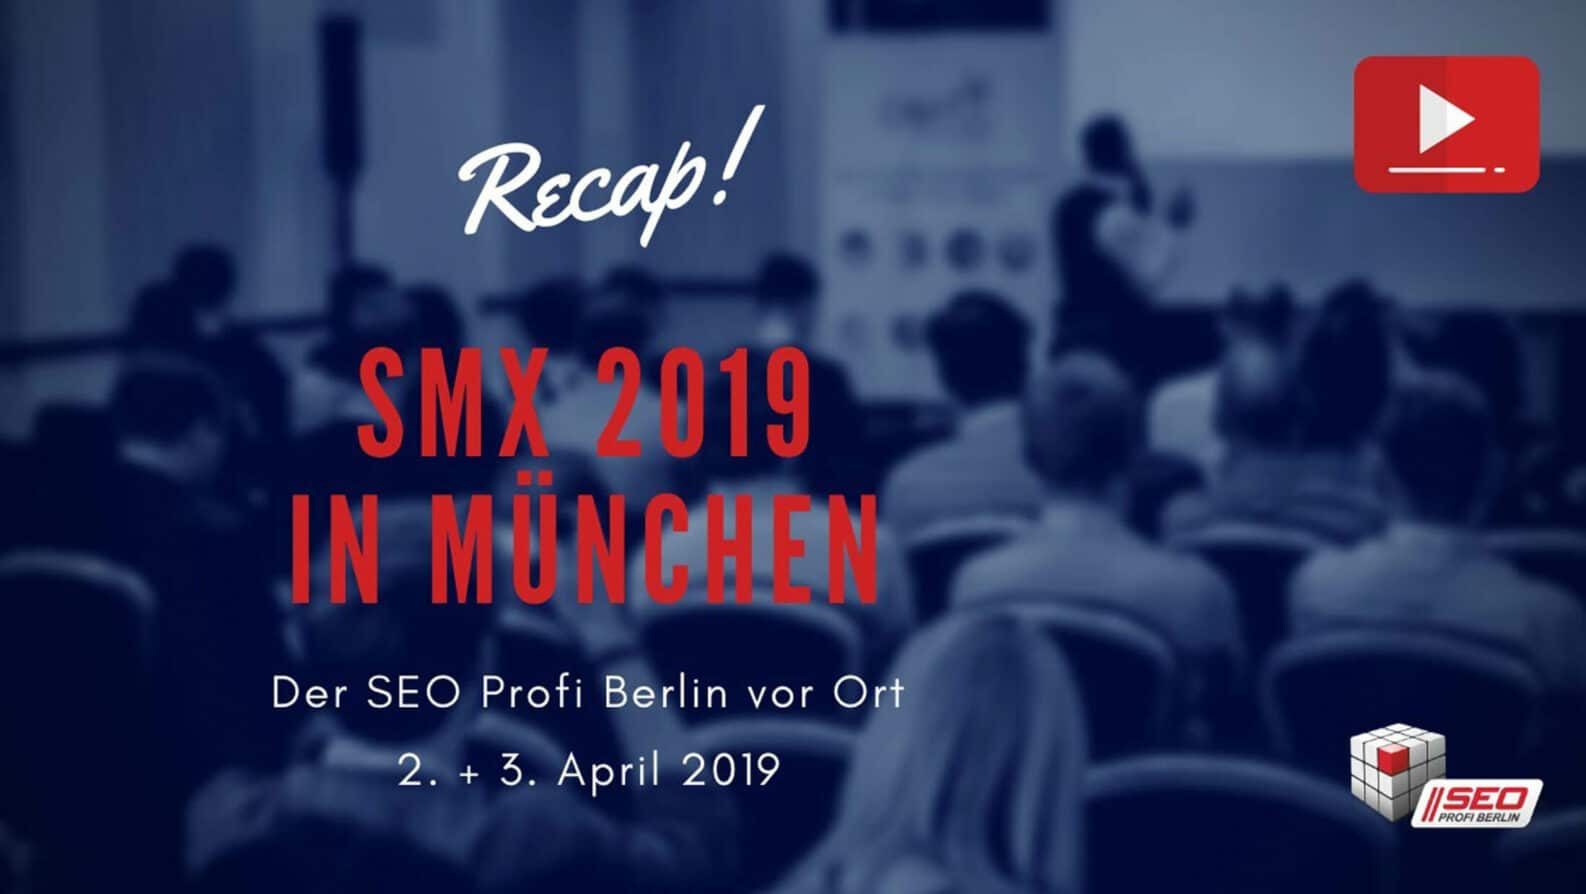 Der Video-Recap zur SMX 2019 in München